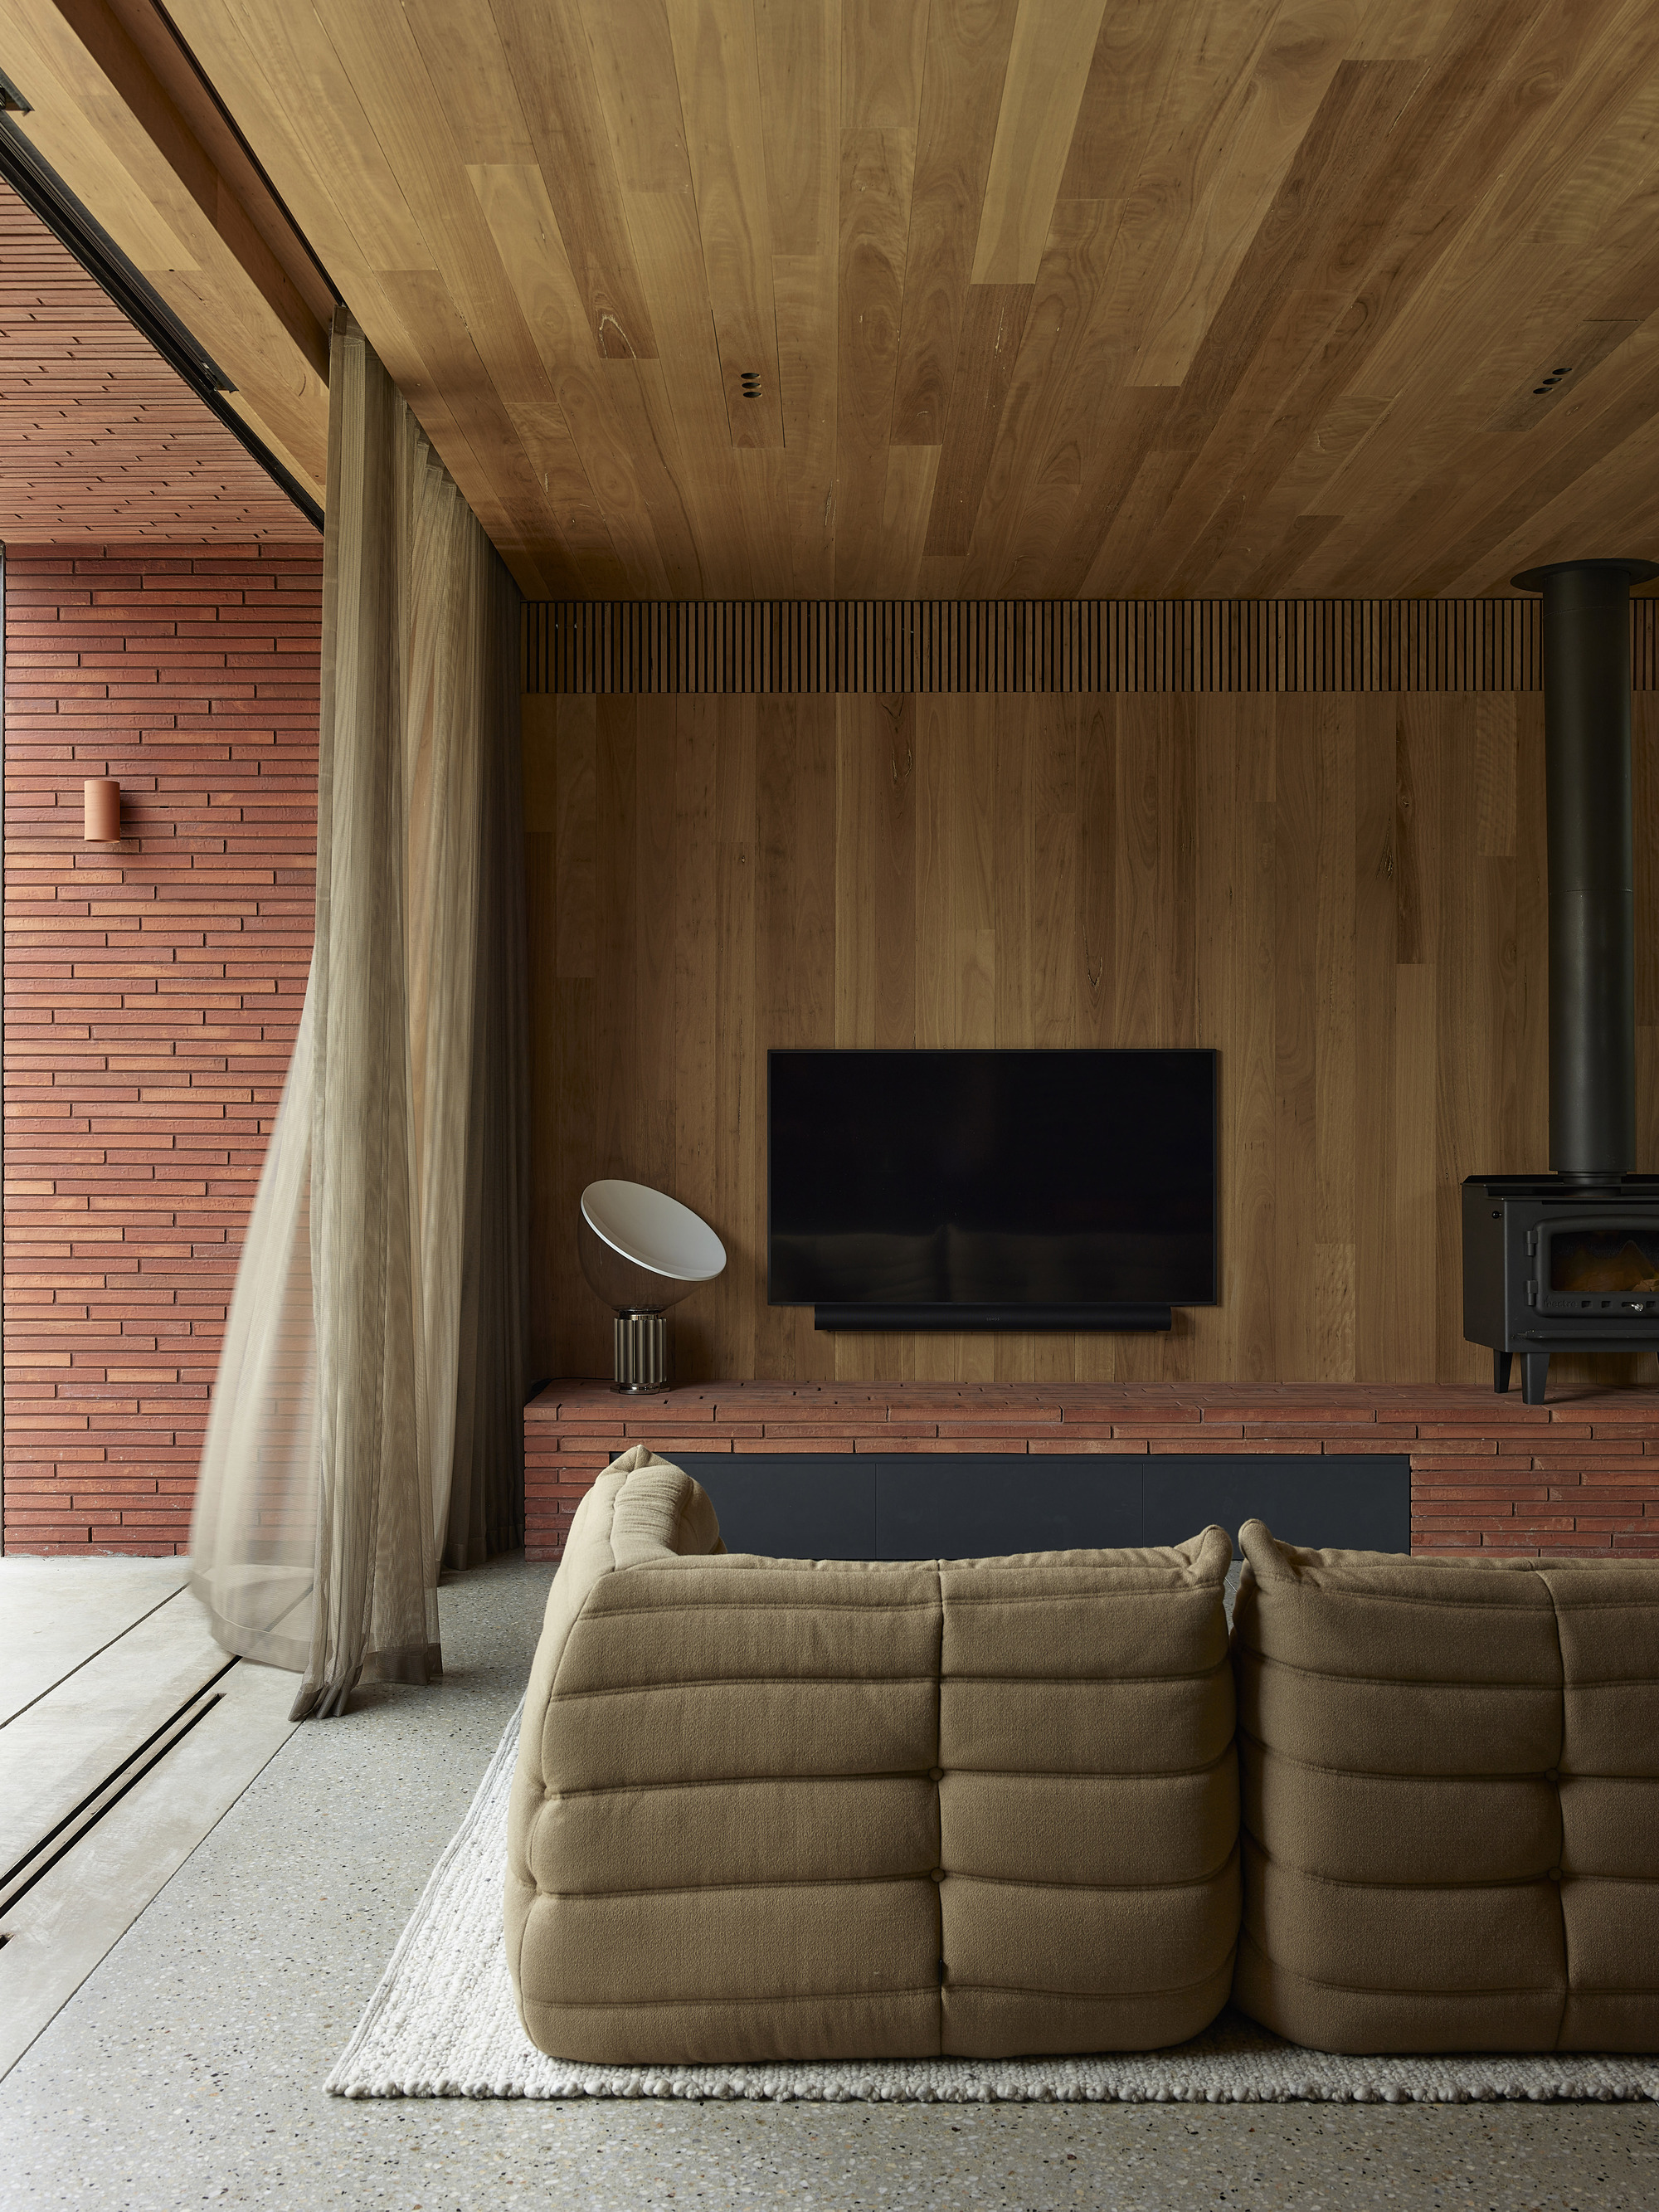 图片[3]|“北部之家” / Wellard Architects|ART-Arrakis | 建筑室内设计的创新与灵感